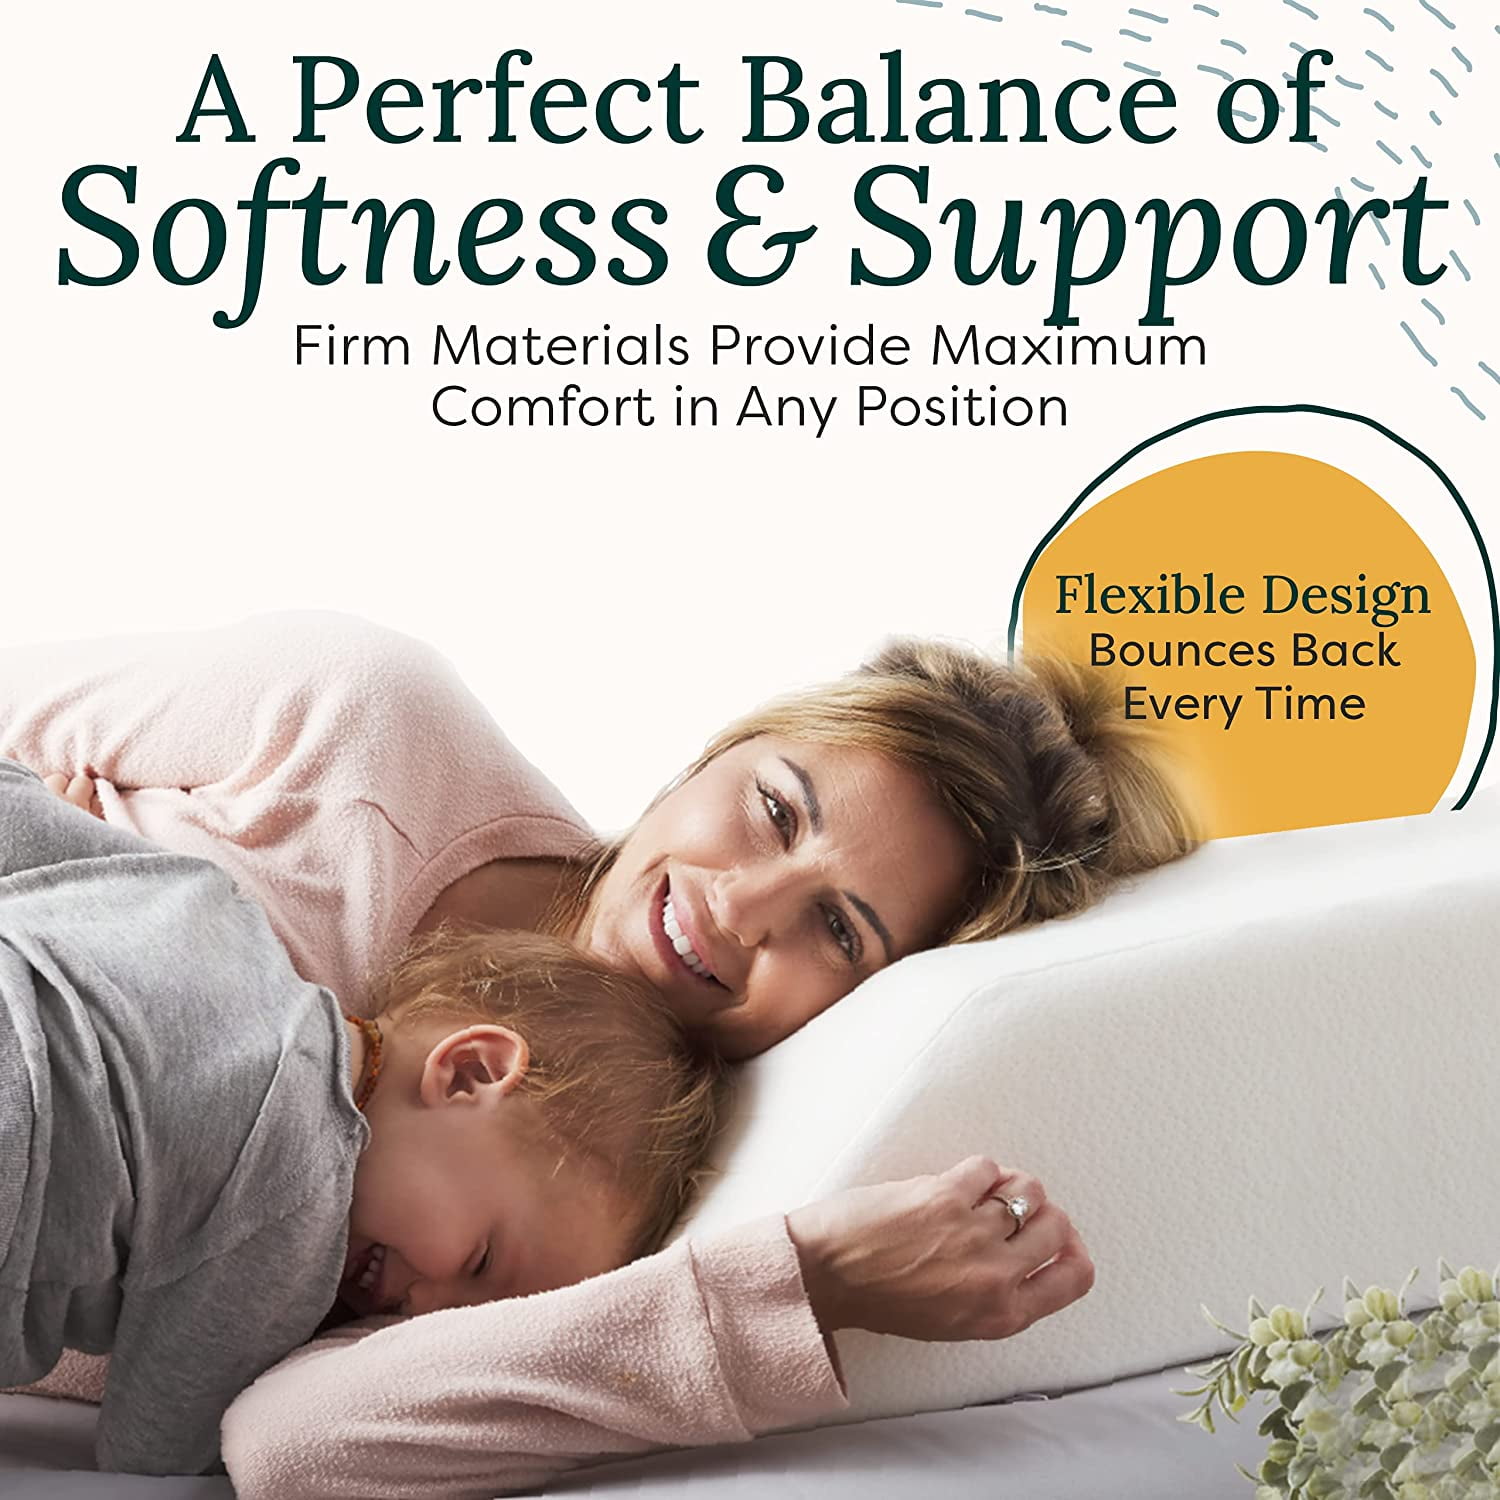 WaistWellness Stretch Pillow & DreamEase Support Pillow